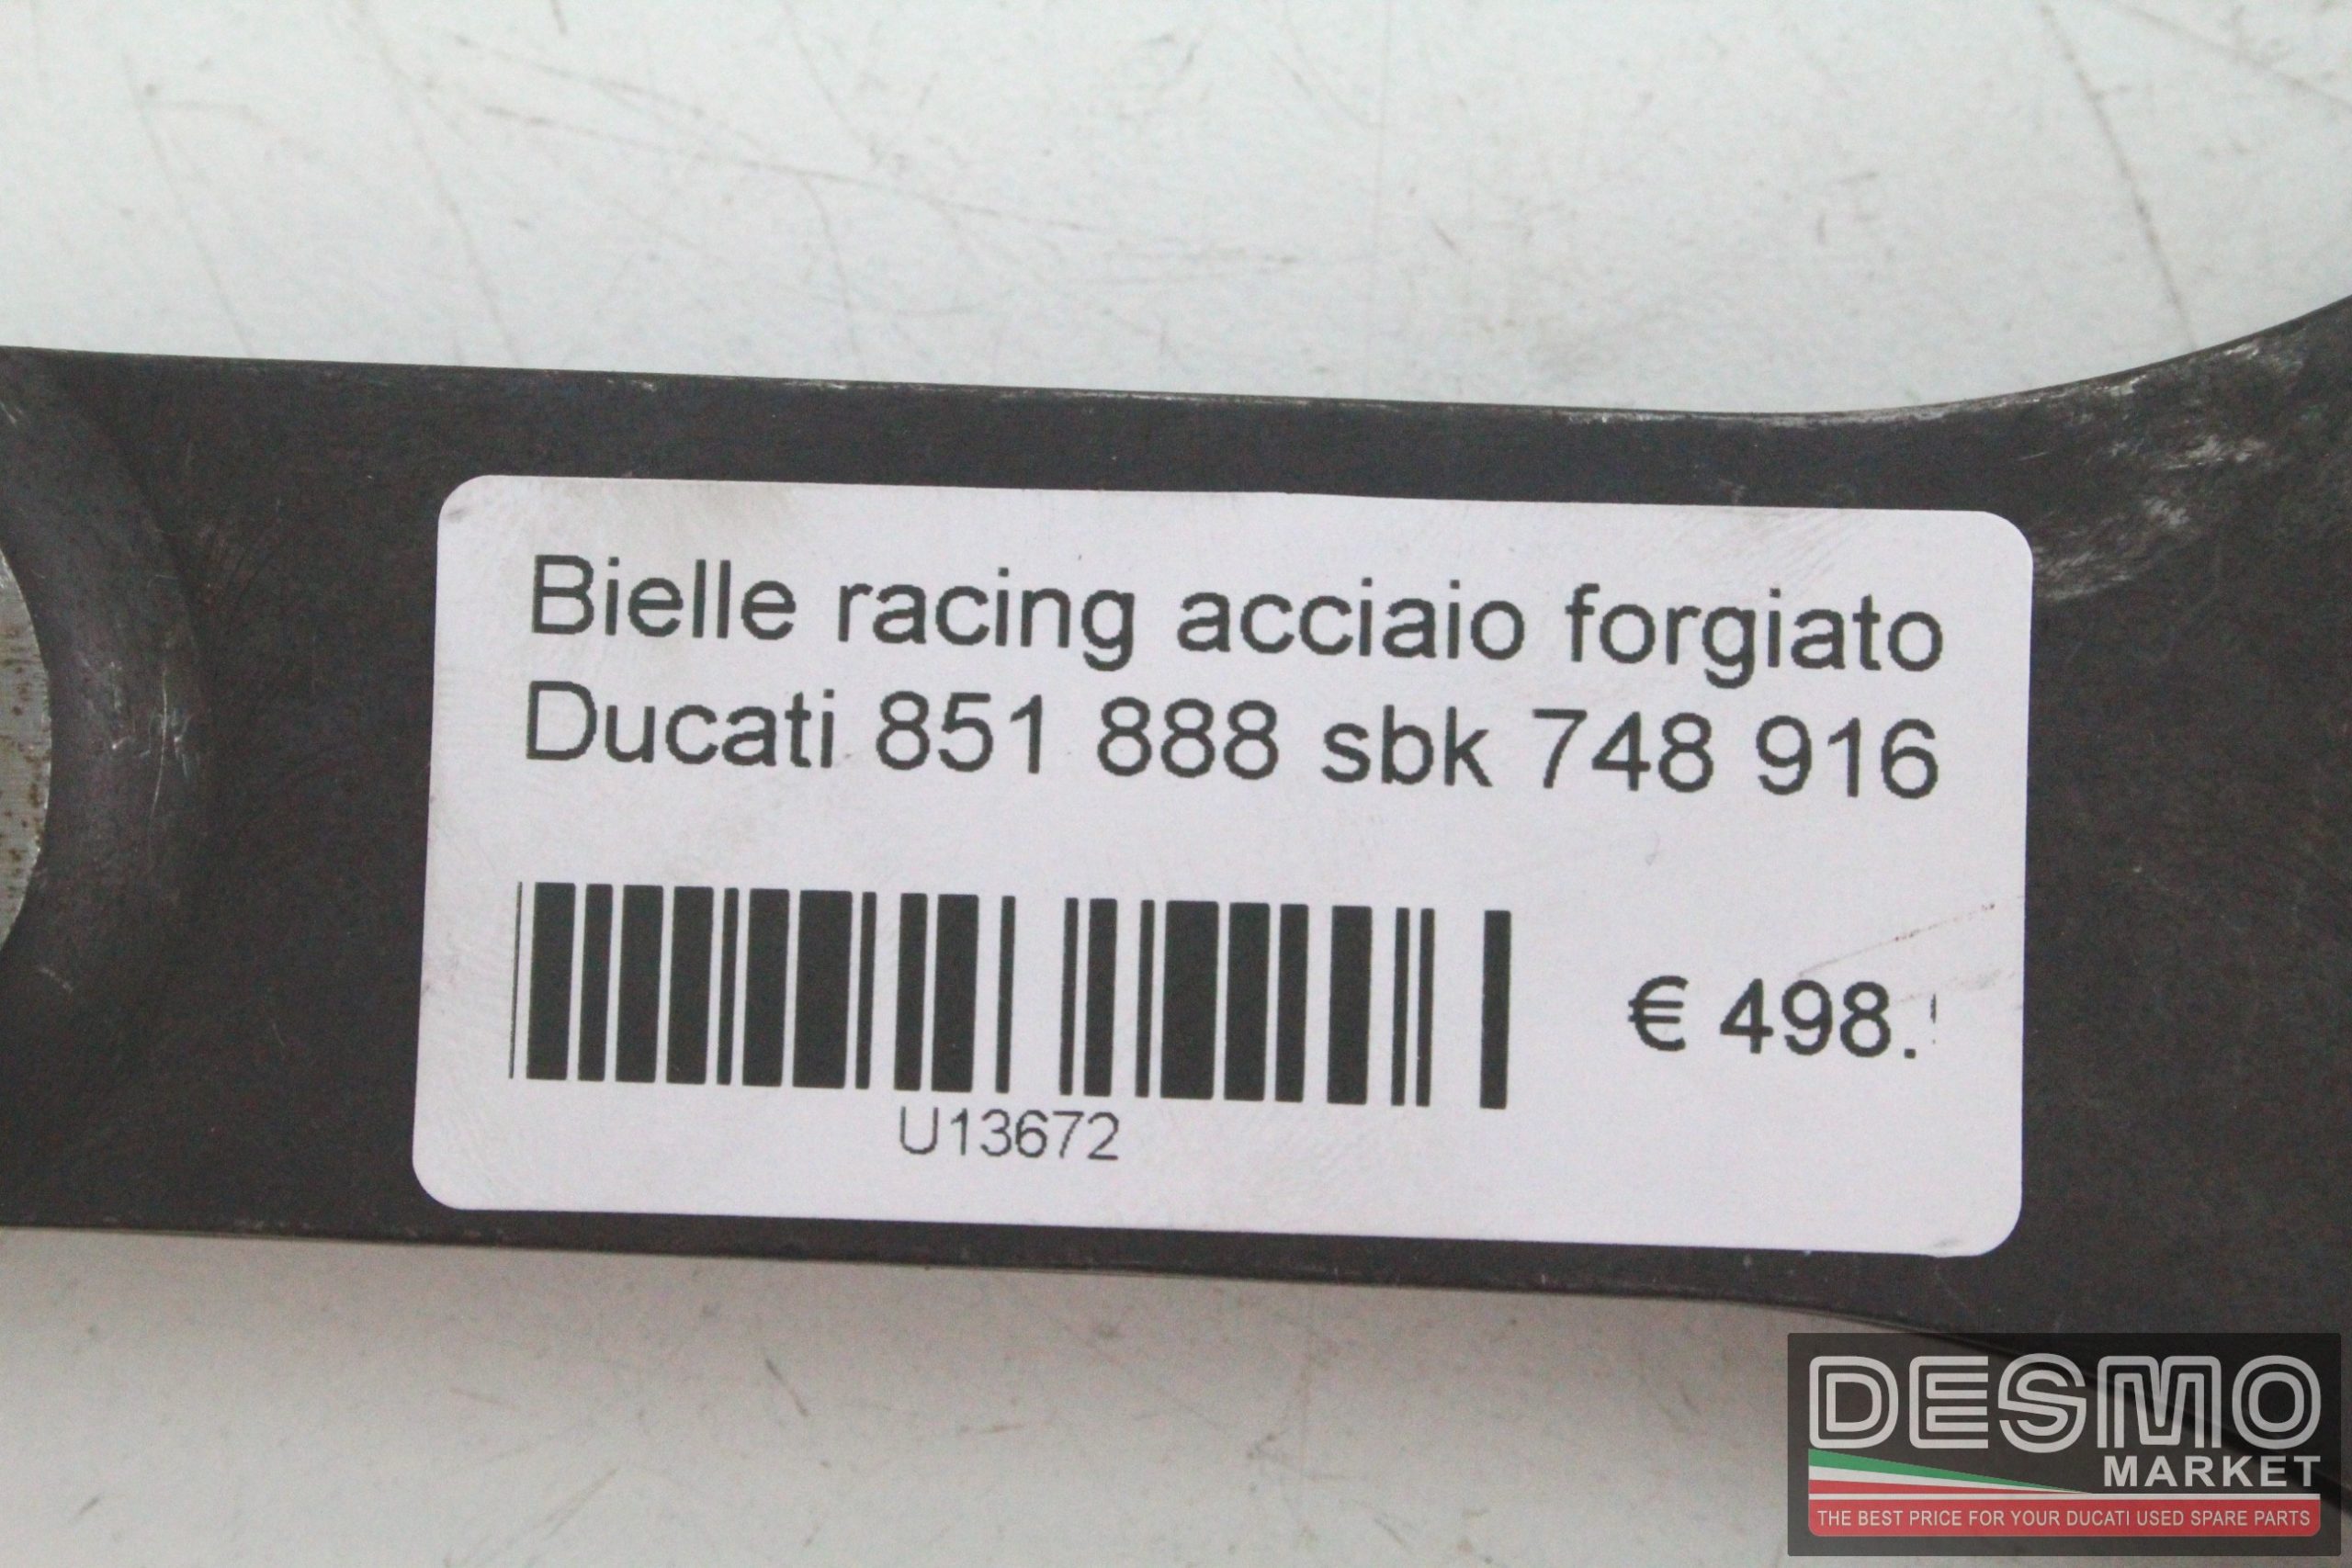 Bielle racing acciaio forgiato Ducati 851 888 sbk 748 916